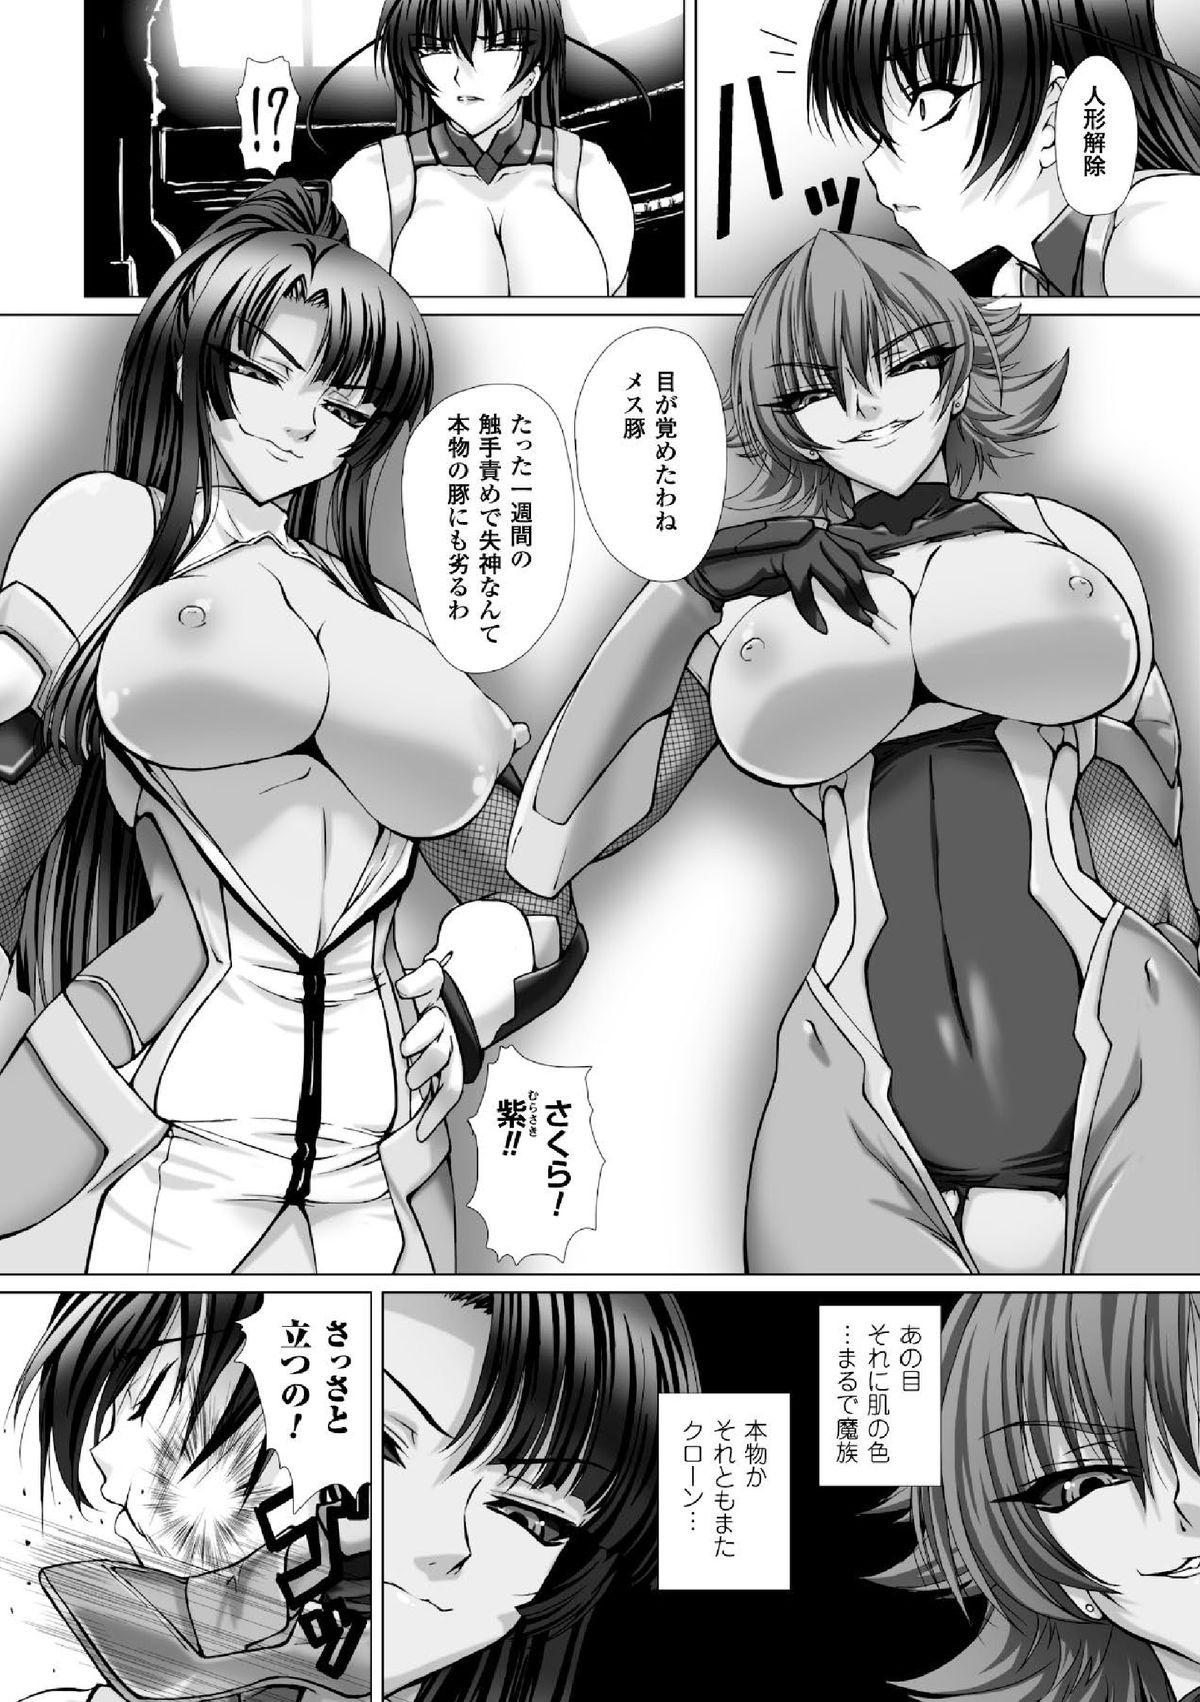 Monstercock Megami Crisis 16 - Taimanin asagi Kangoku senkan Koutetsu no majo annerose Amateur Sex Tapes - Page 11